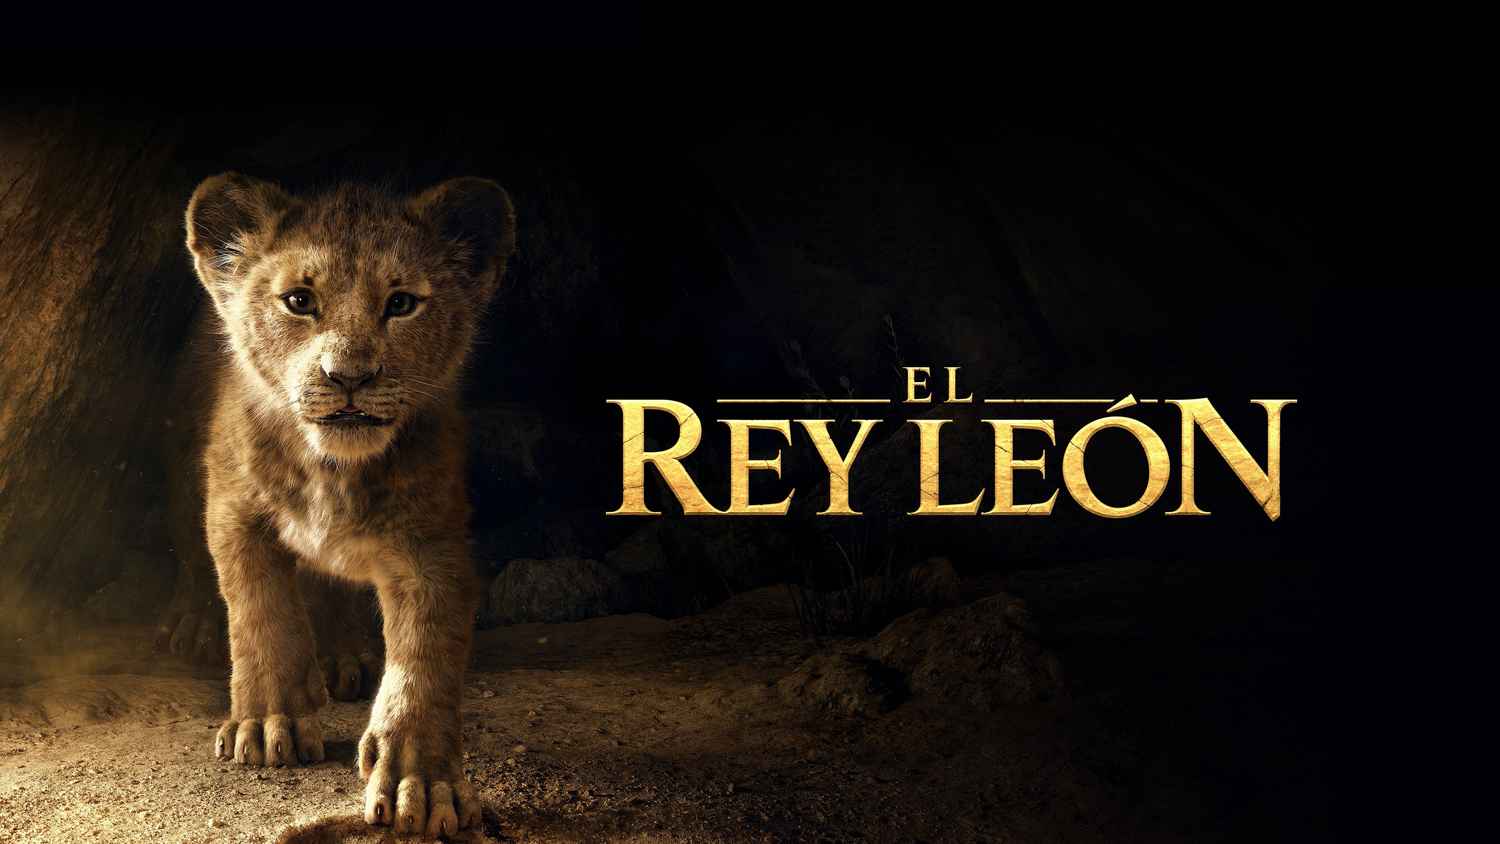 watch lion king 2 online megavideo free